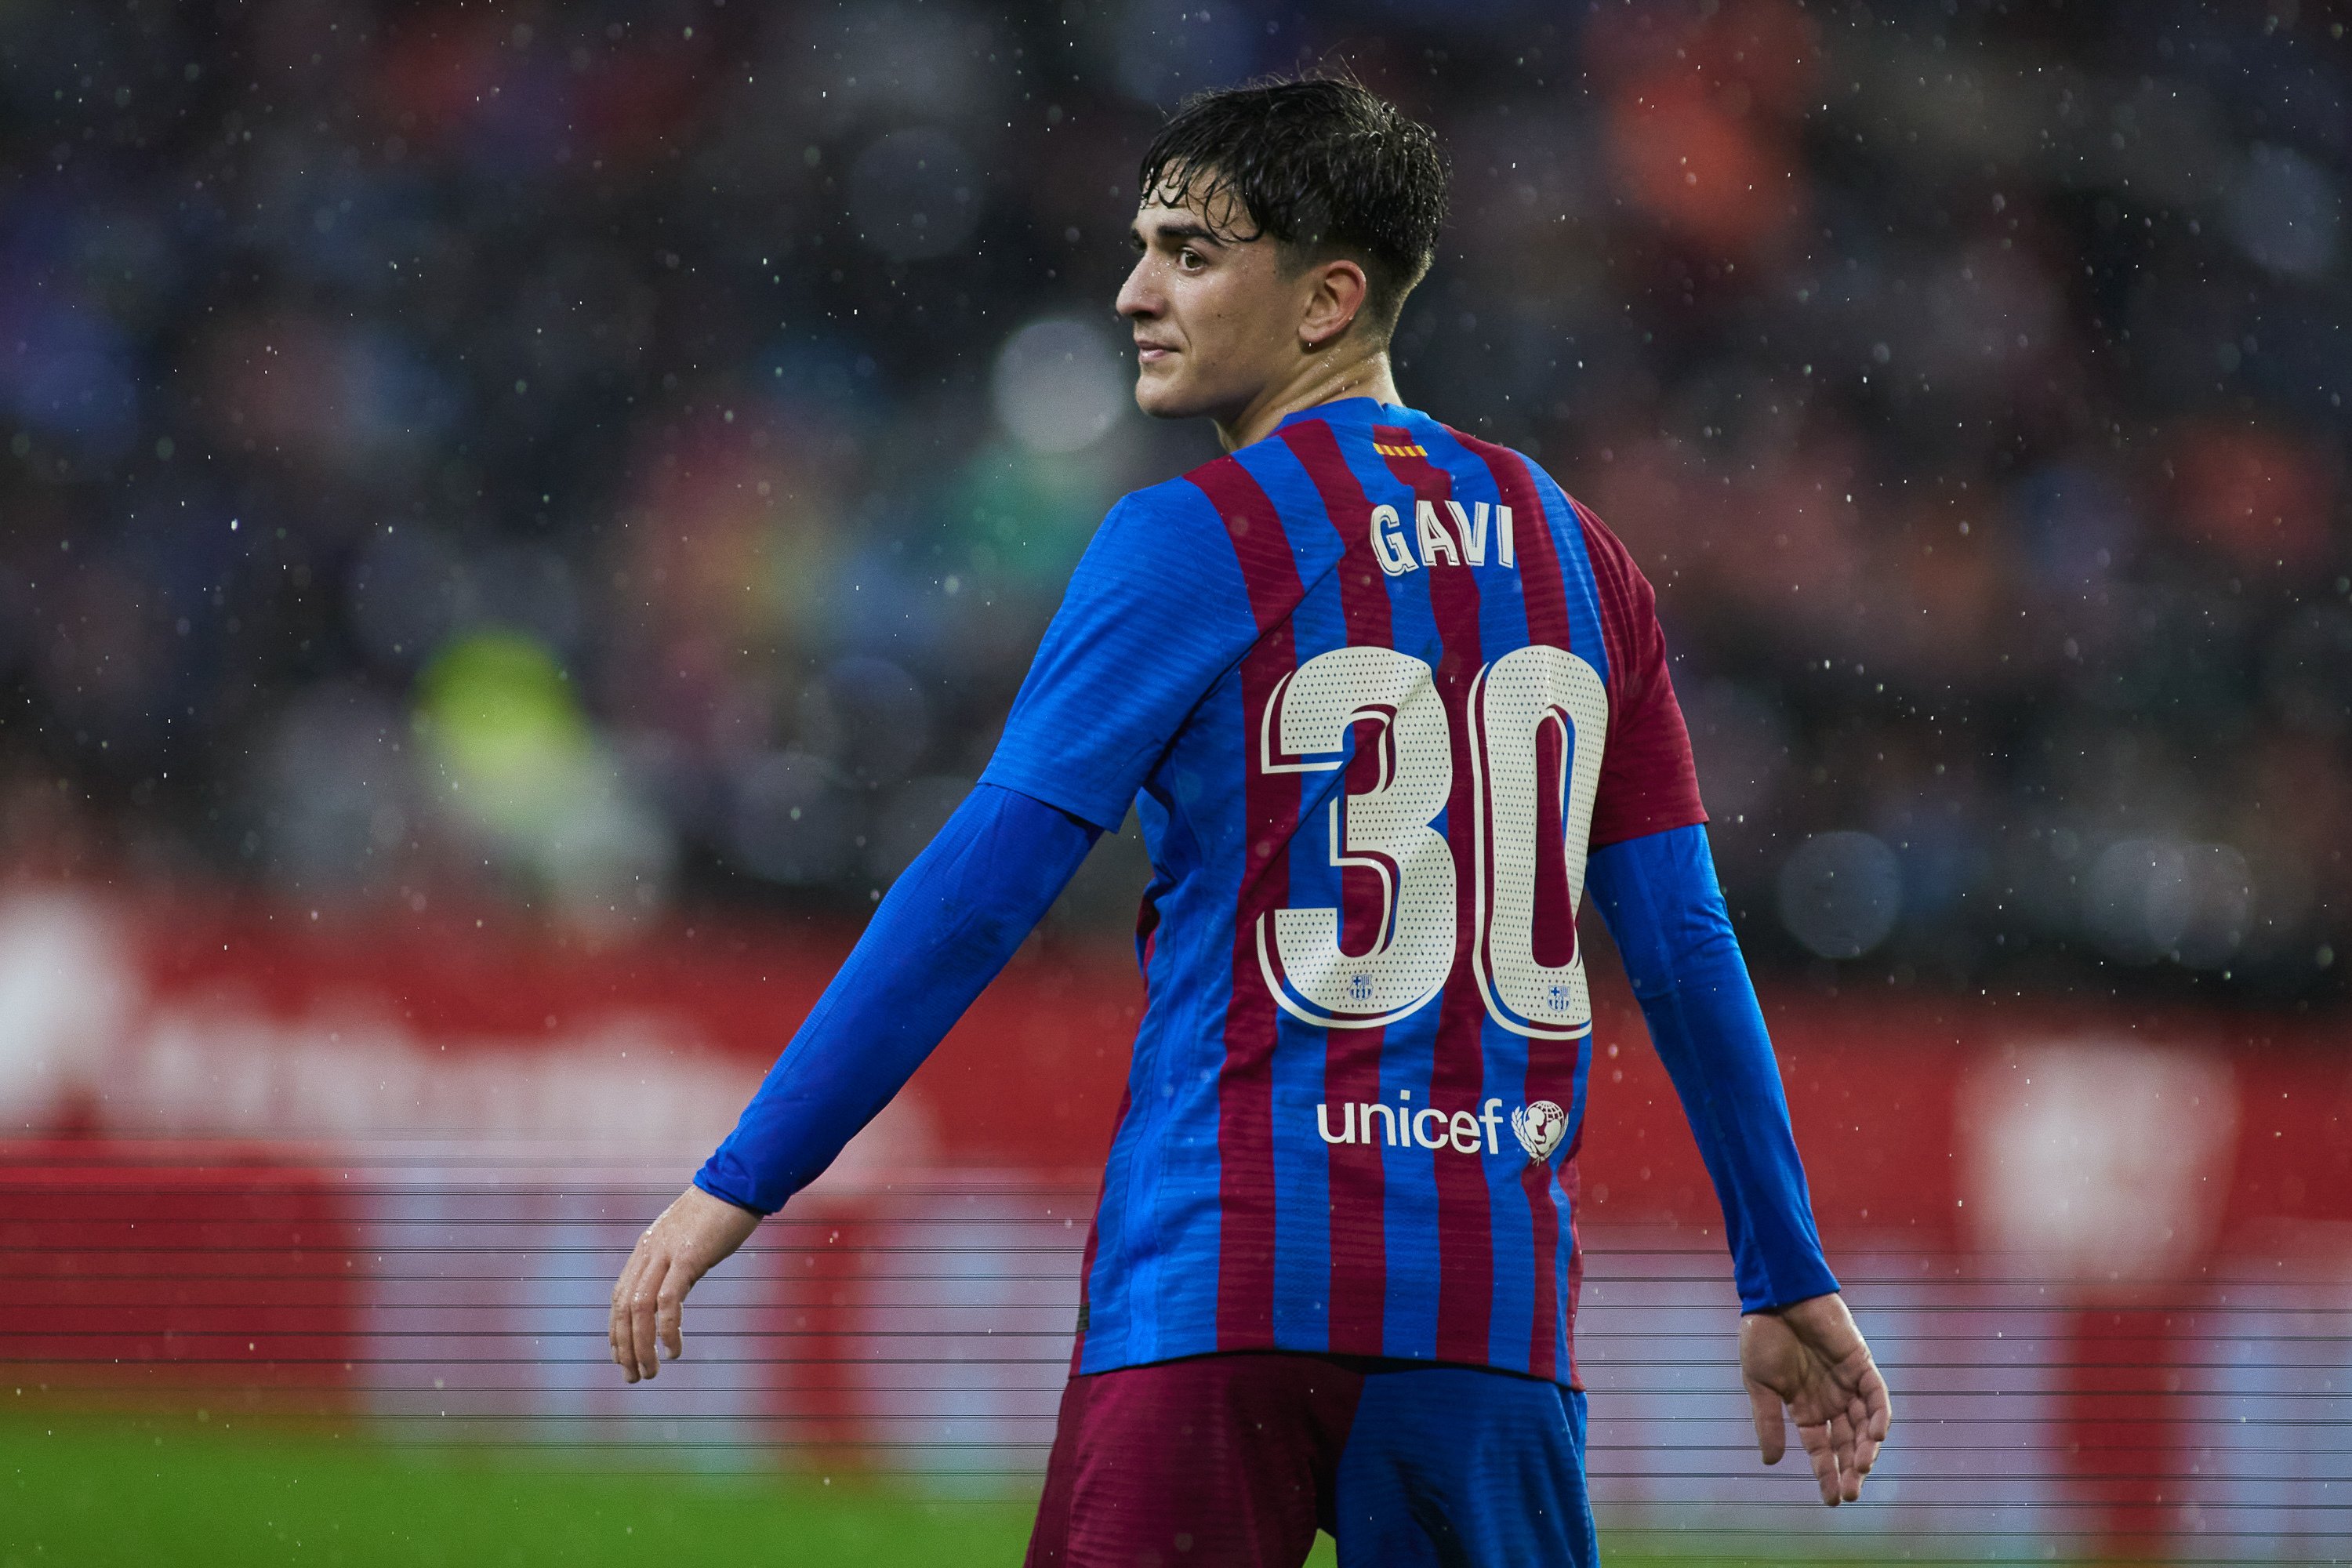 La renovació de Gavi amb el Barça segueix sense acord: noves reunions en els propers dies